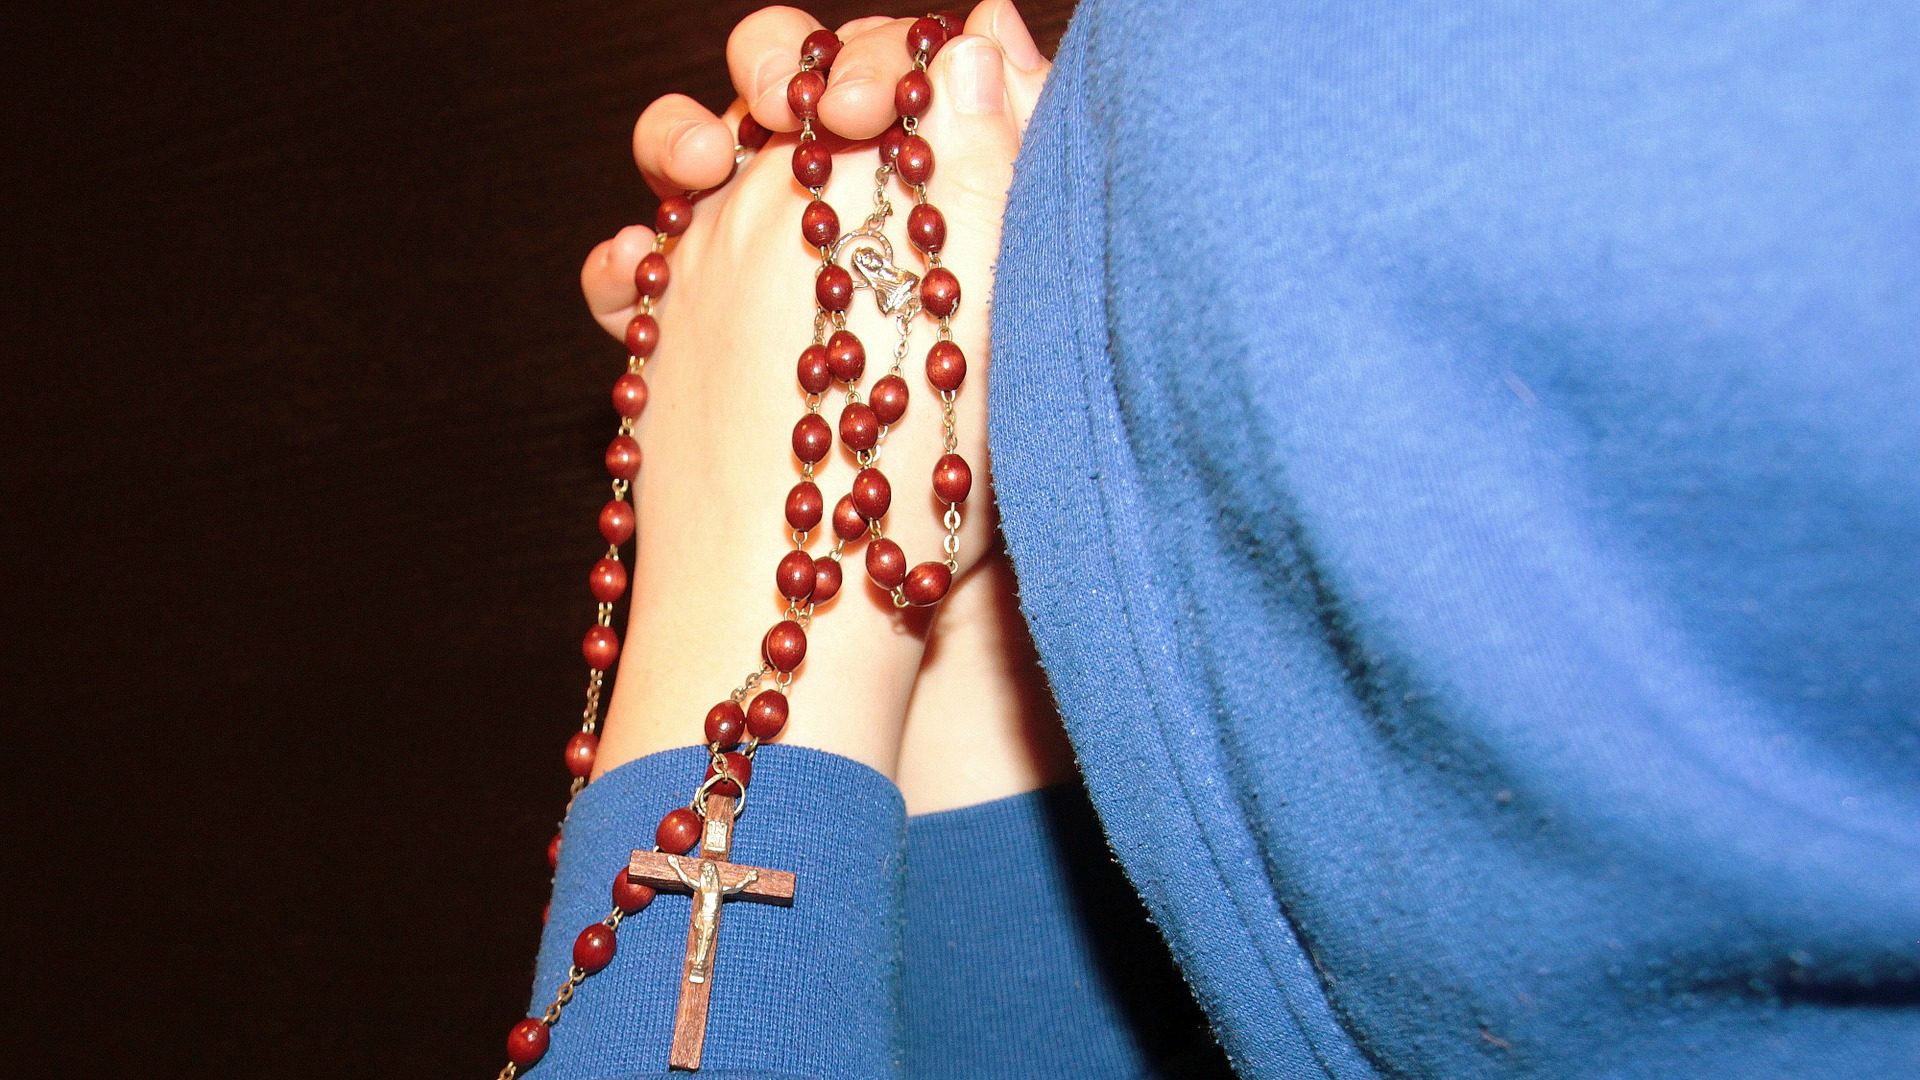 Les catholiques de Suisse ne sont pas les plus assidus dans la prière (Photo:pixabay.com)